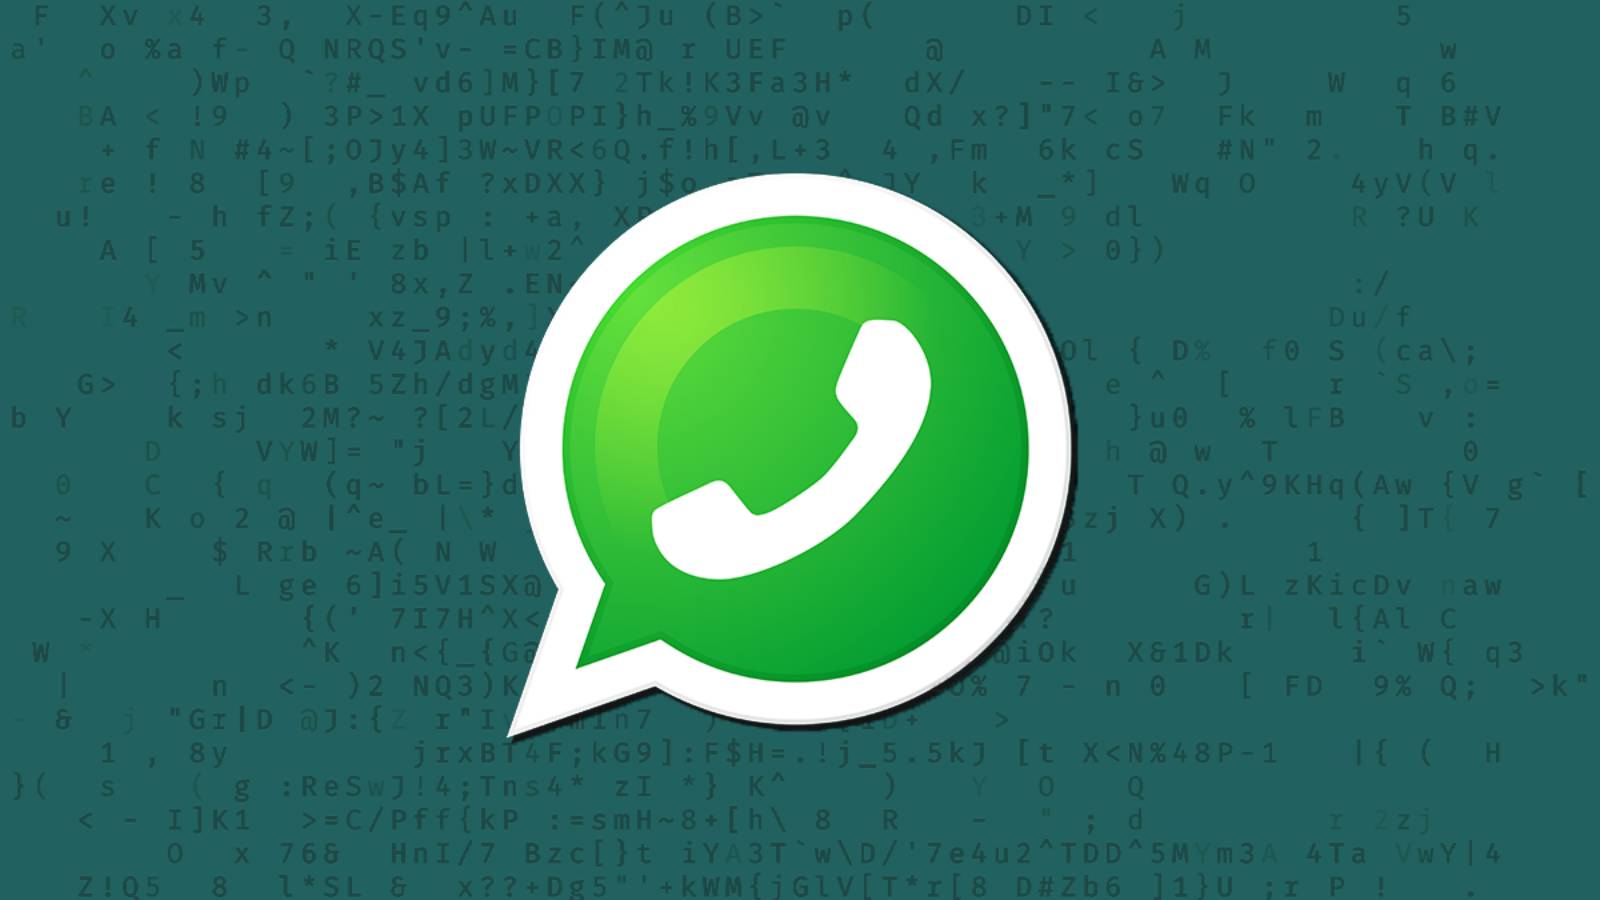 WhatsApp rende ufficiale il cambiamento LAST MINUTE di iPhone Android